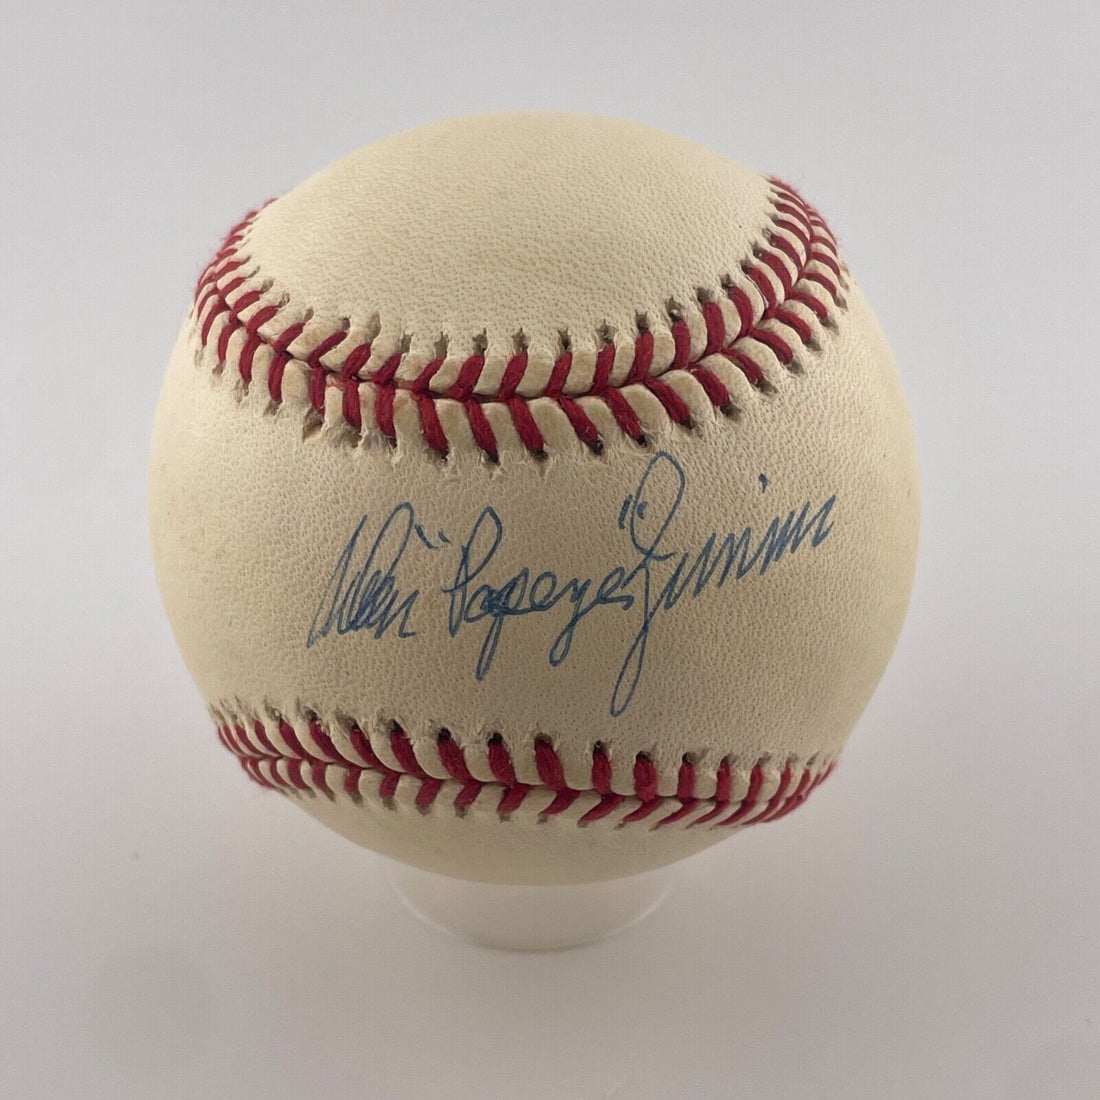 Don &quot;Poppy&quot; Zimmer Single Signed Baseball. MLB Certified + Steiner Hologram.